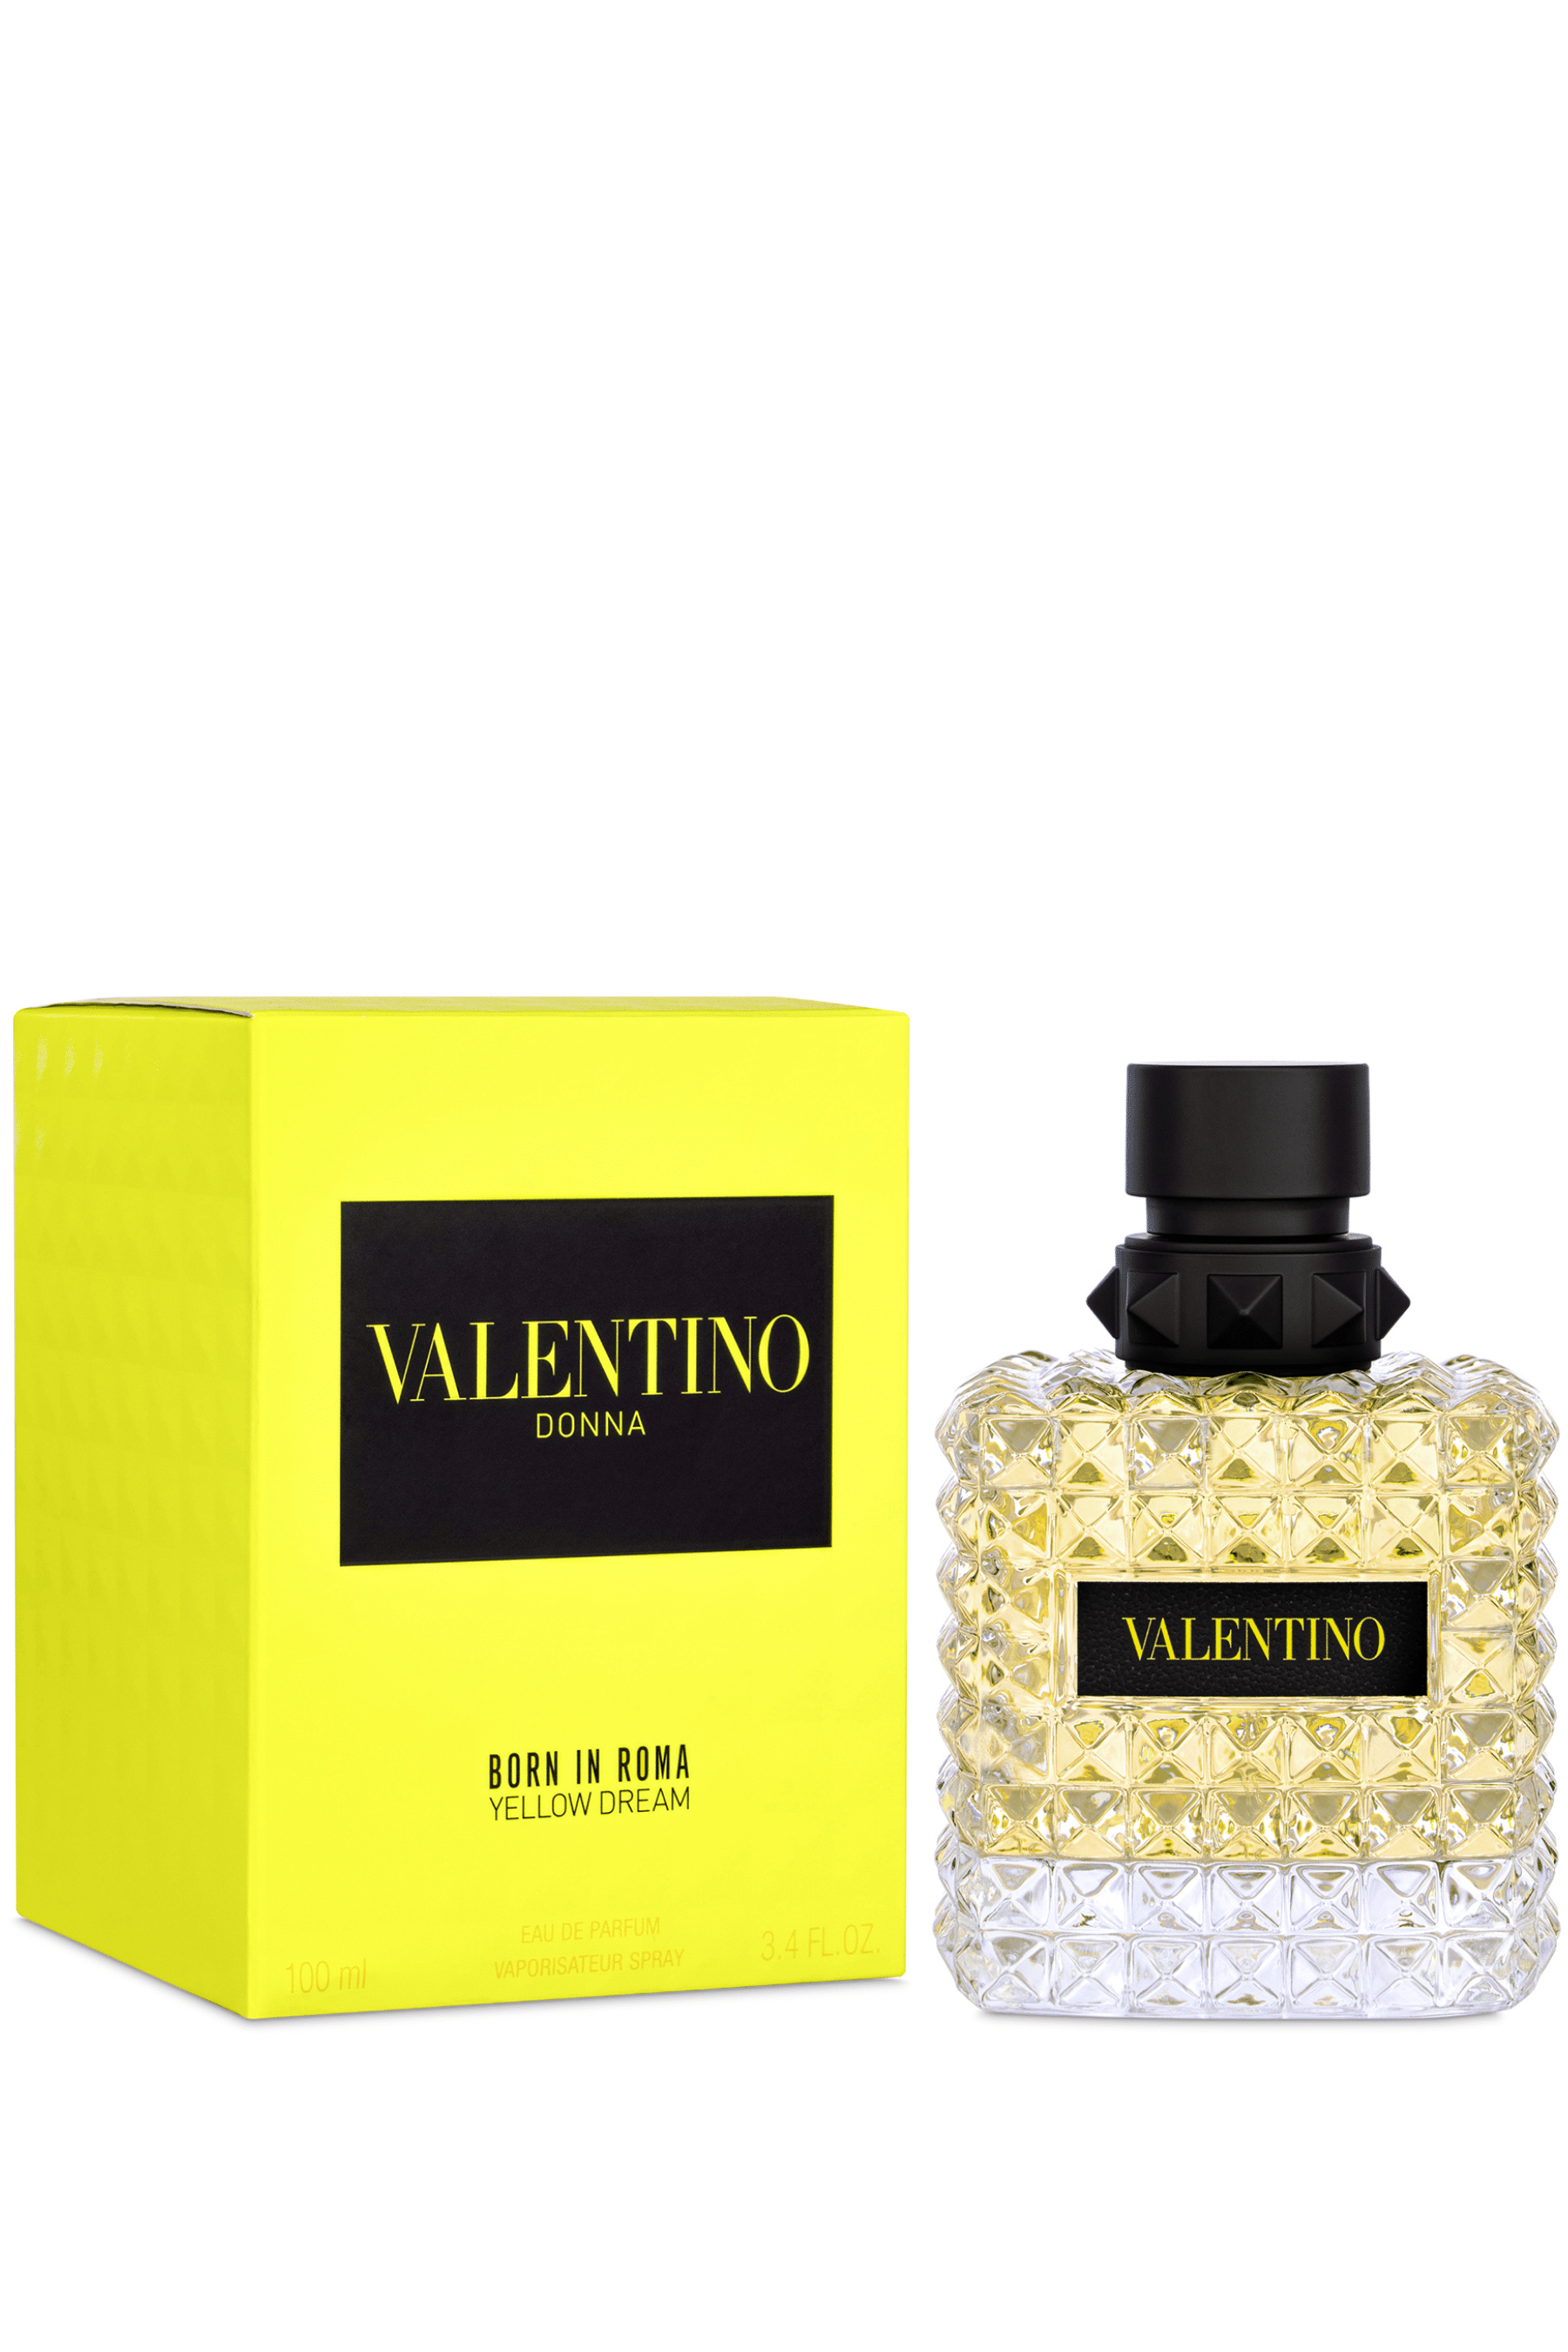 Valentino - Yellow in Roma REBL de Eau Parfum | Dream Born